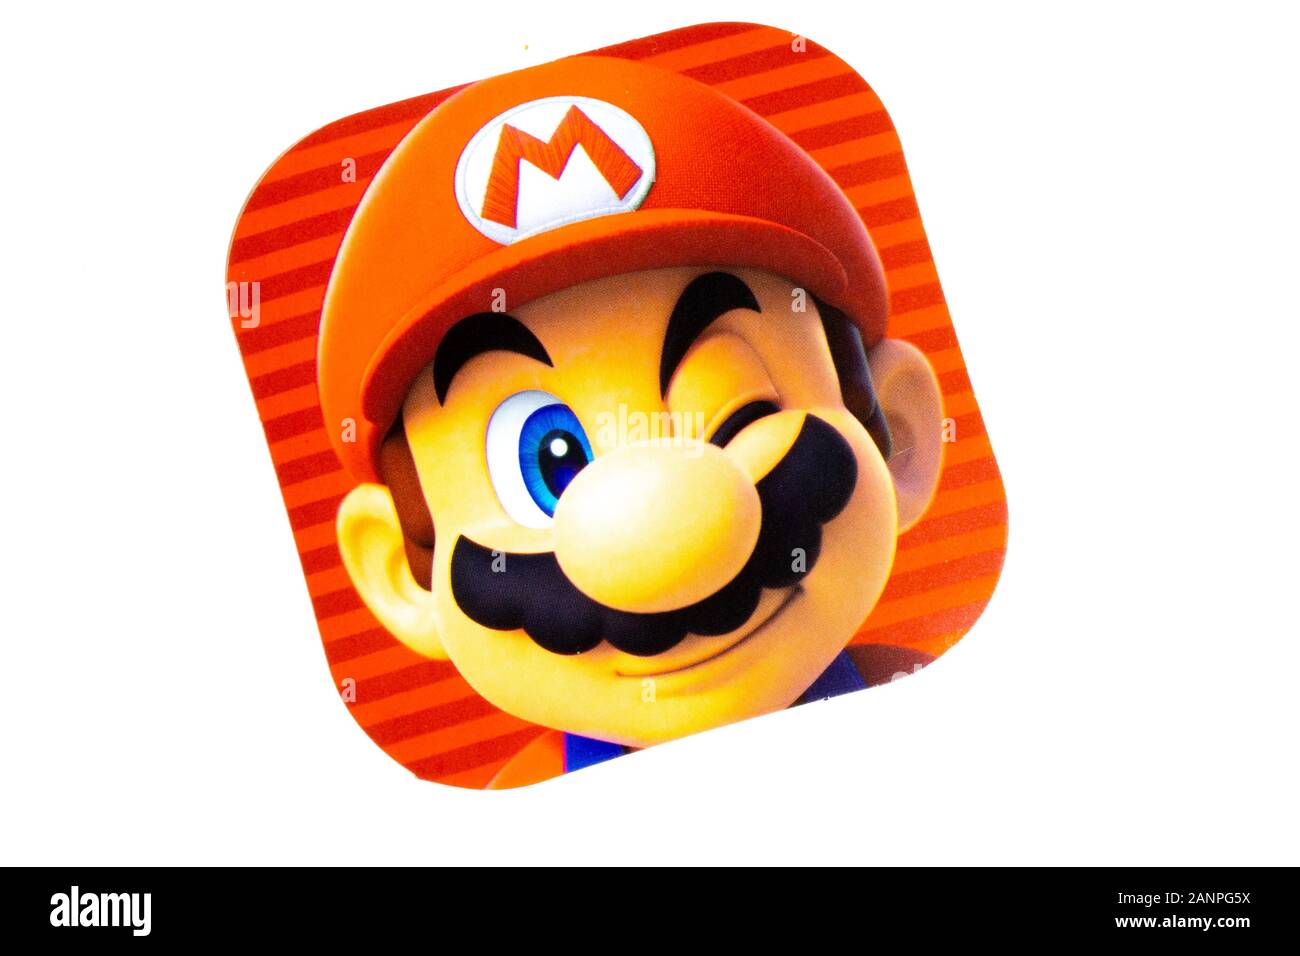 Los Angeles, Californie, États-Unis - 17 janvier 2020: Mario game icon sur fond blanc, éditorial illustratif Banque D'Images